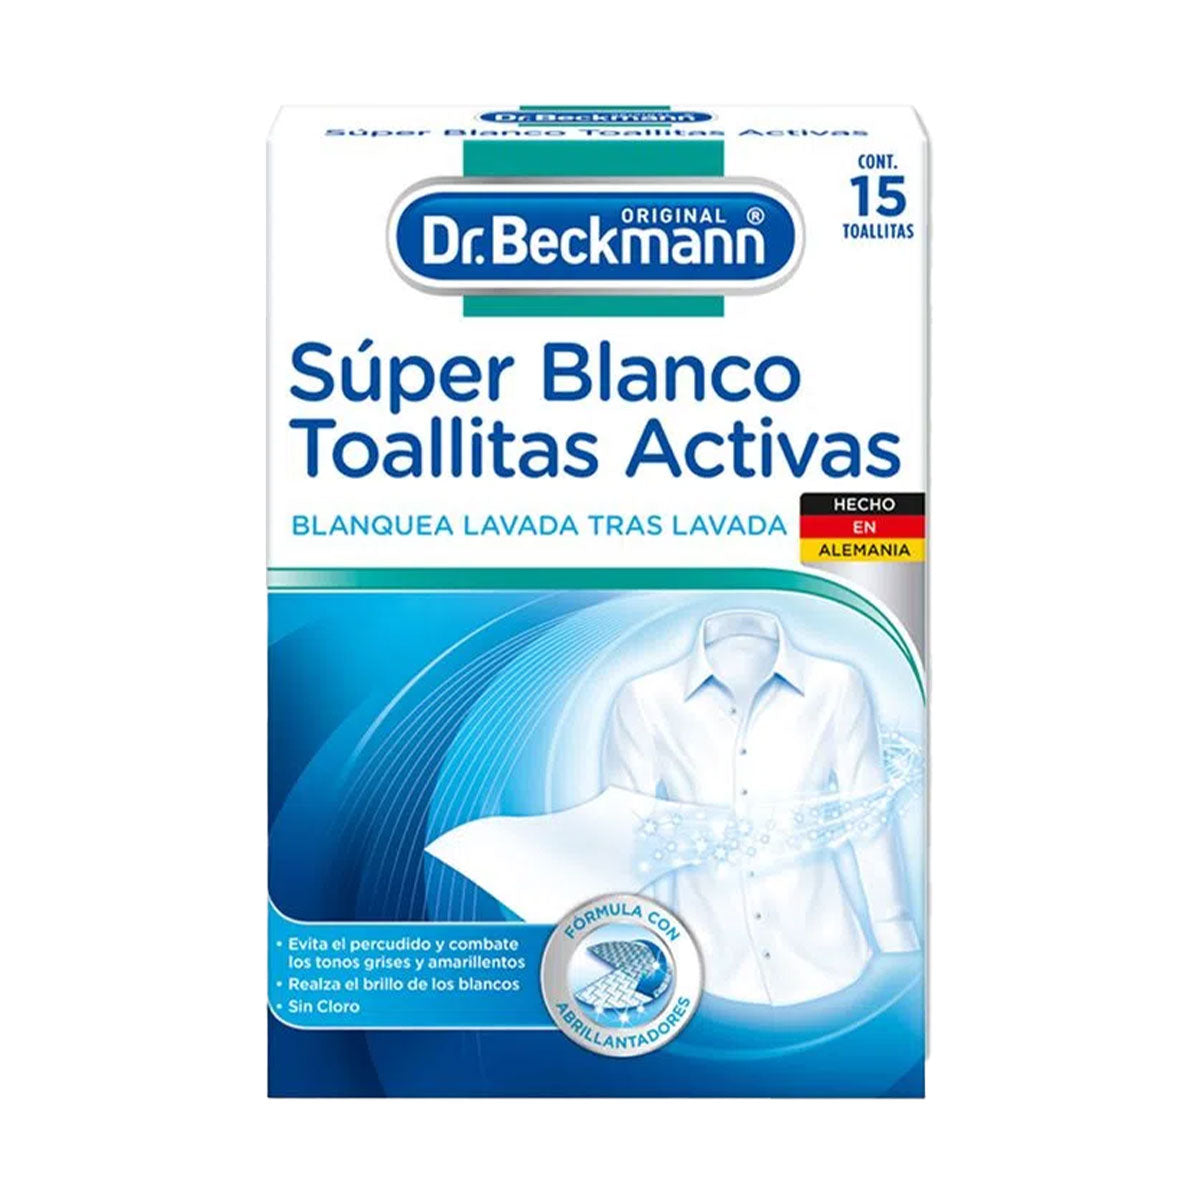 Toallitas Activas Blanqueadoras de Ropa Súper Blanco 15u unidades Dr. Beckmann. Producto Alemán Sustentable